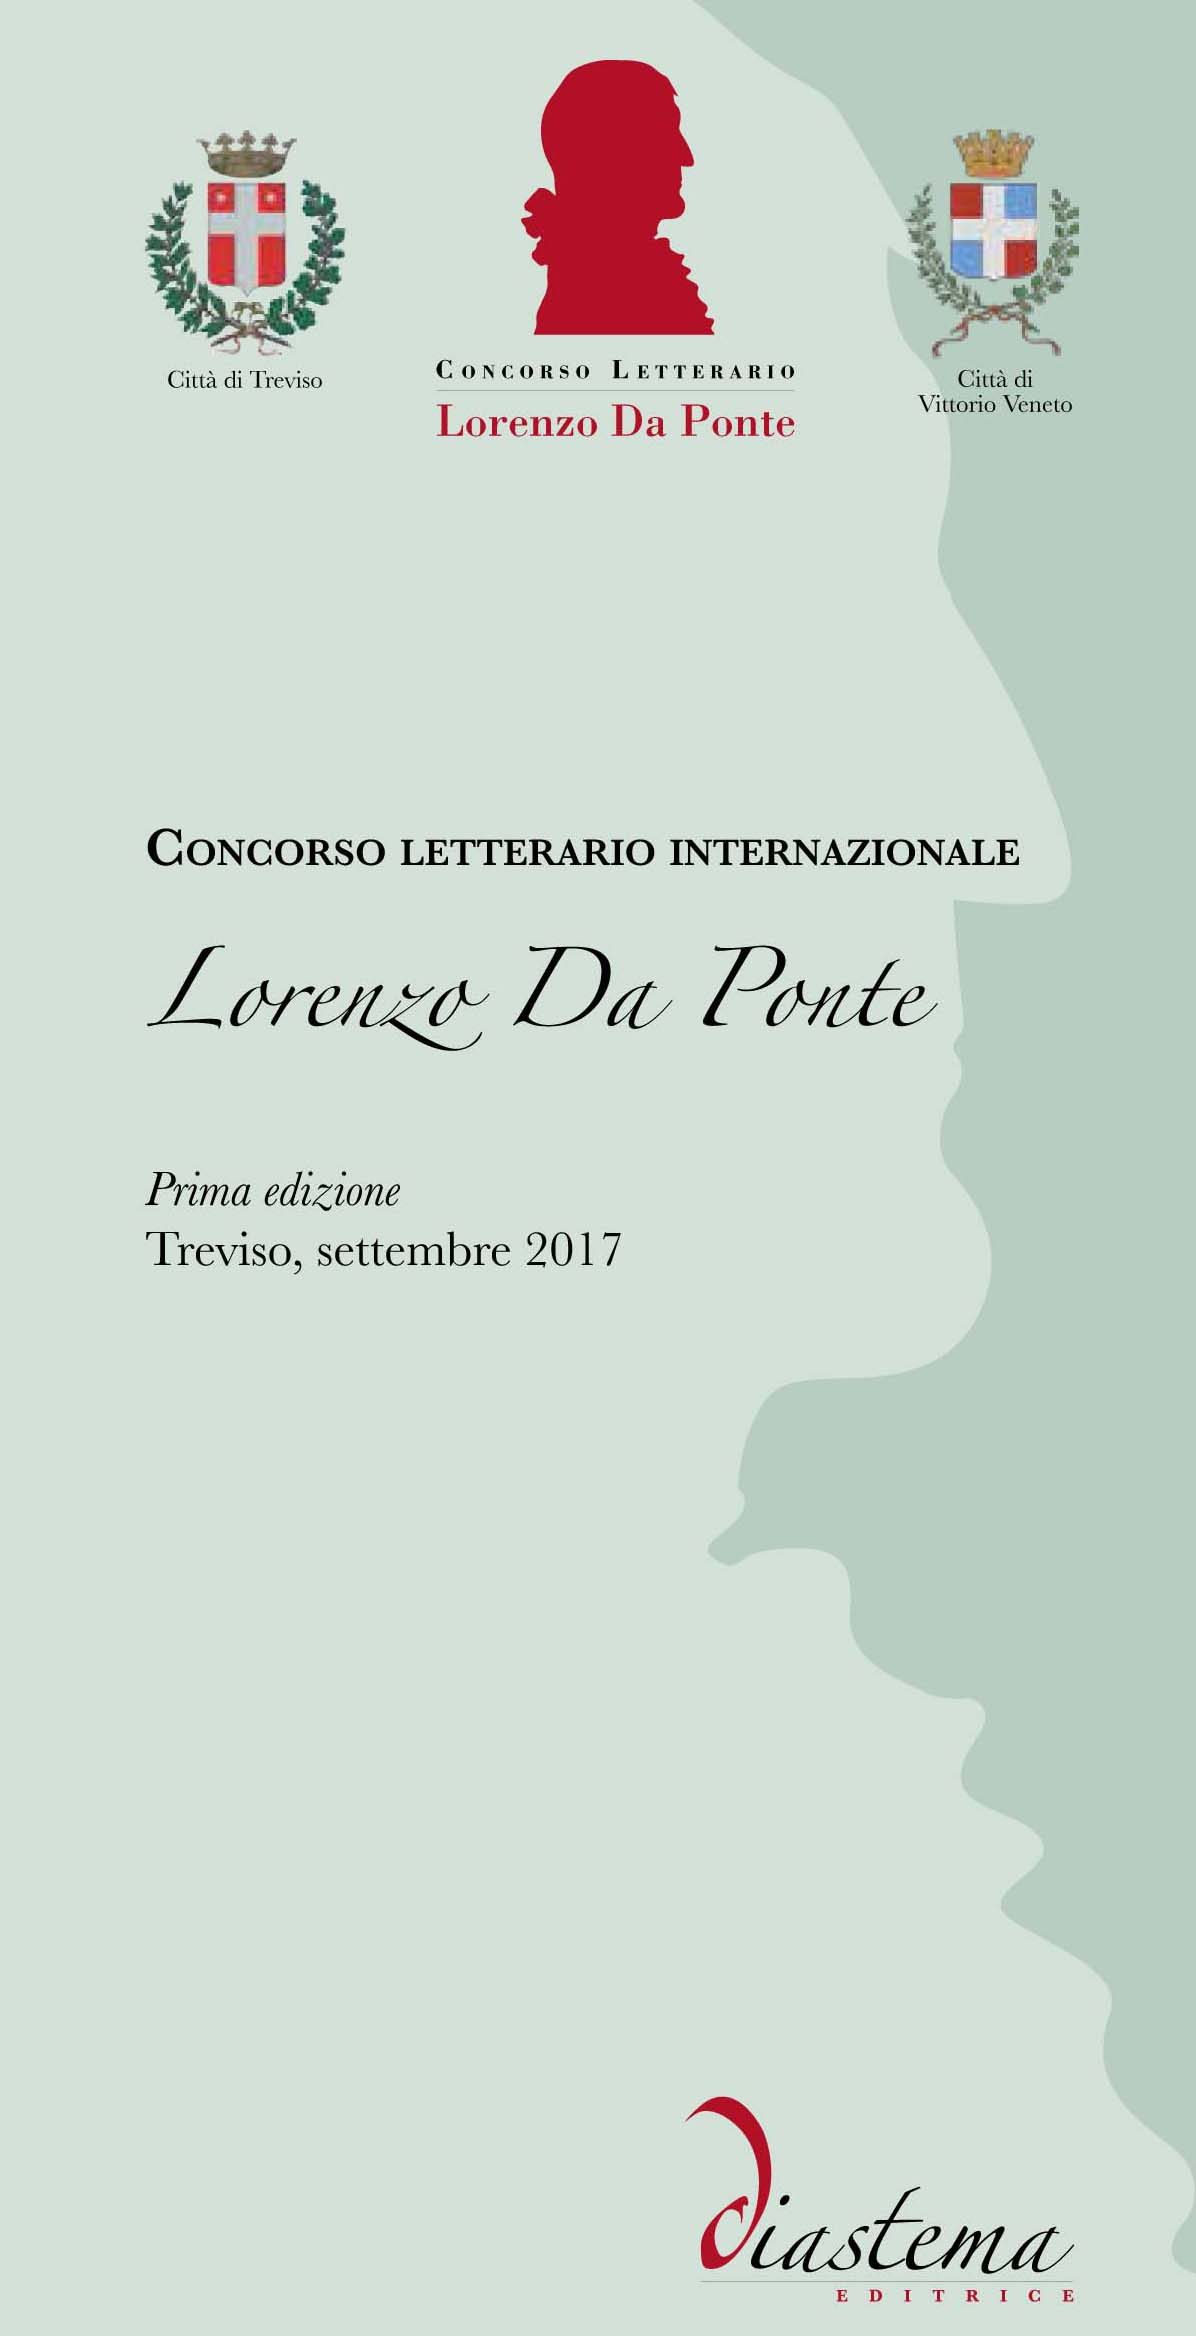 Concorso letterario internazionale “Lorenzo Da Ponte”